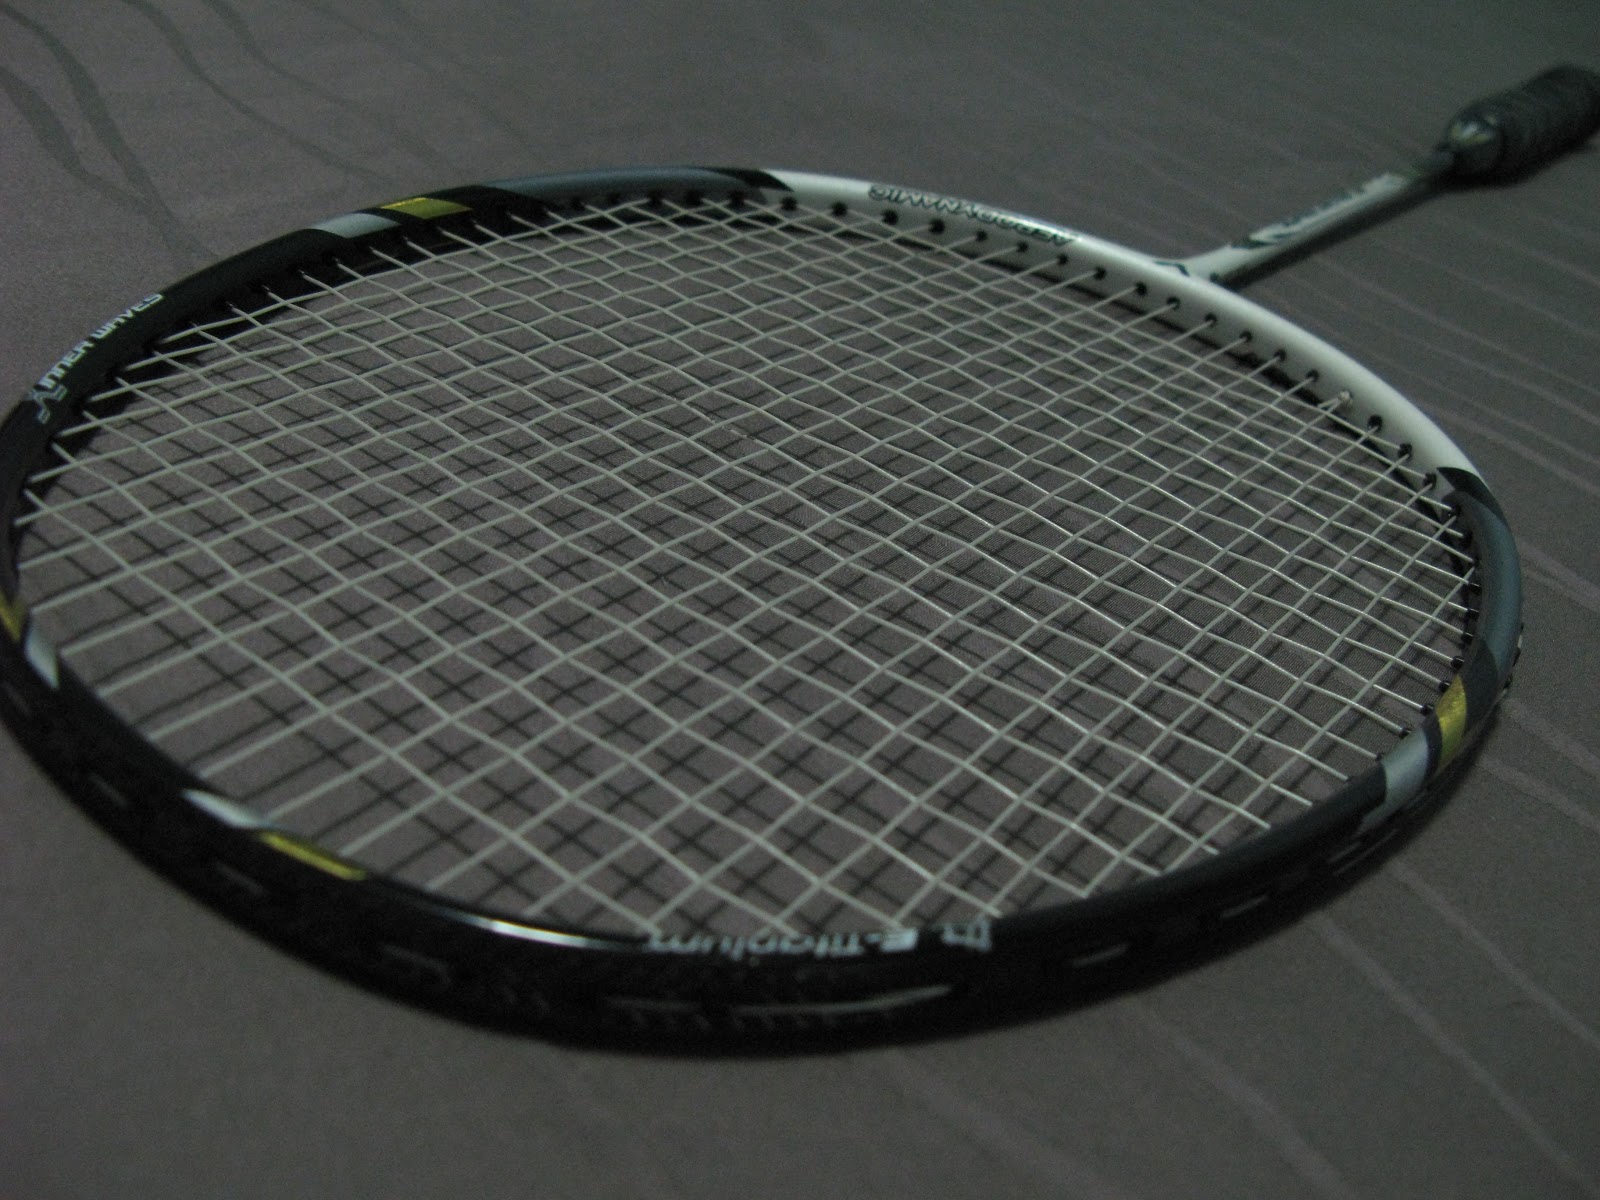 Of badminton things: Badminton Racket First Look: Victor Super Waves 30